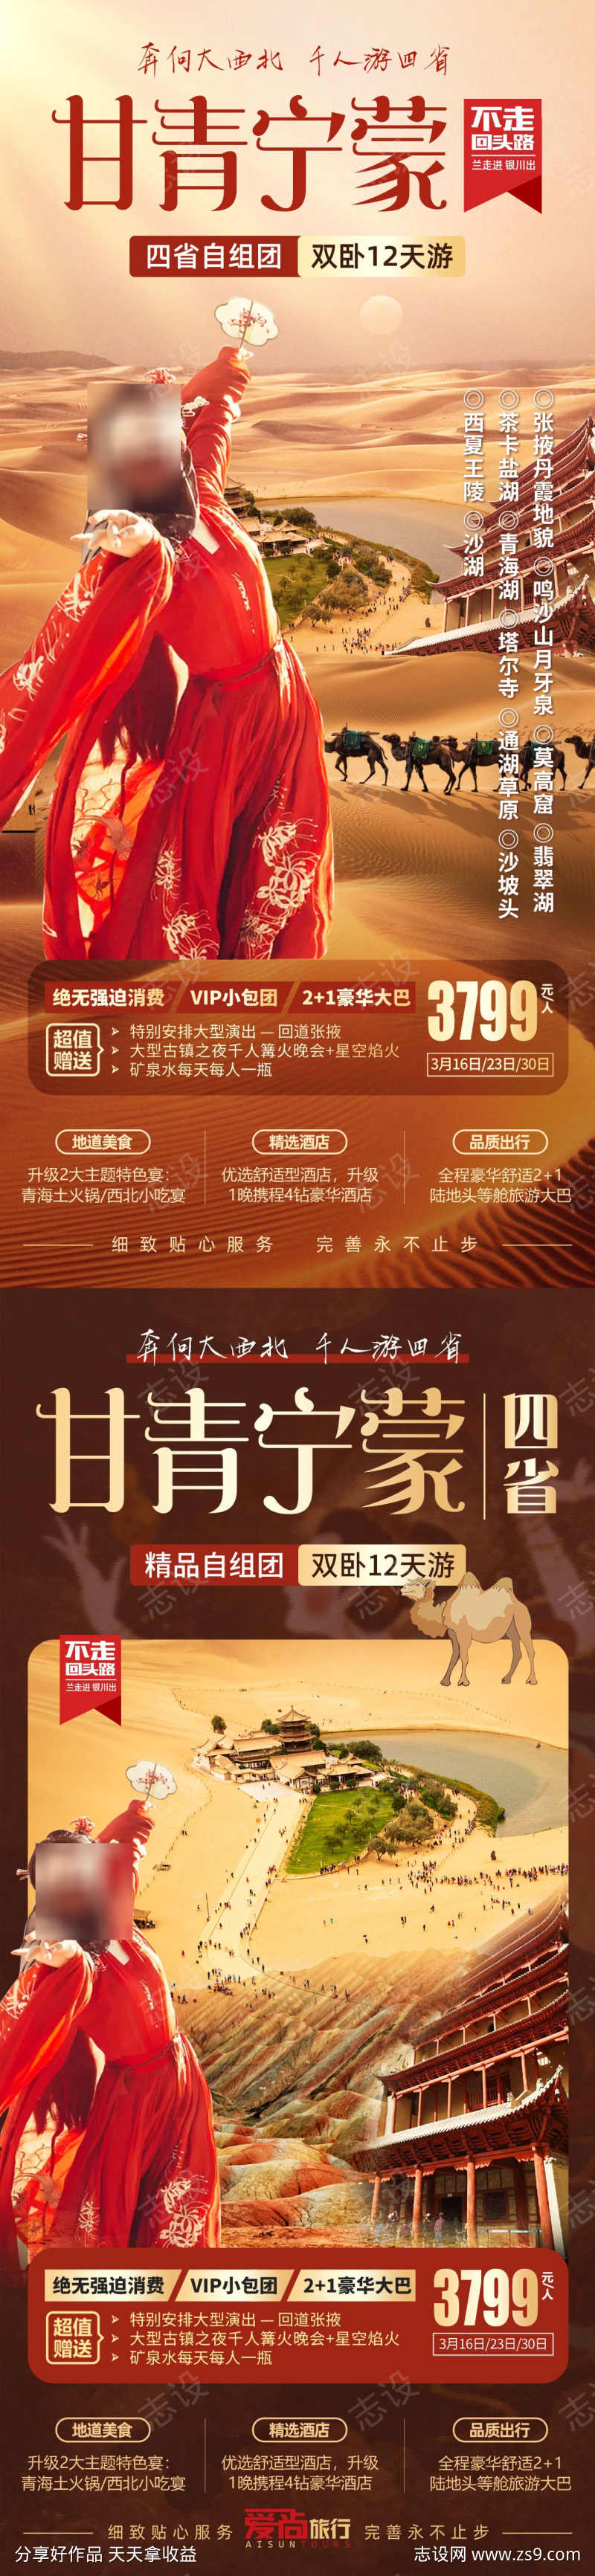 甘青宁蒙四省旅游海报